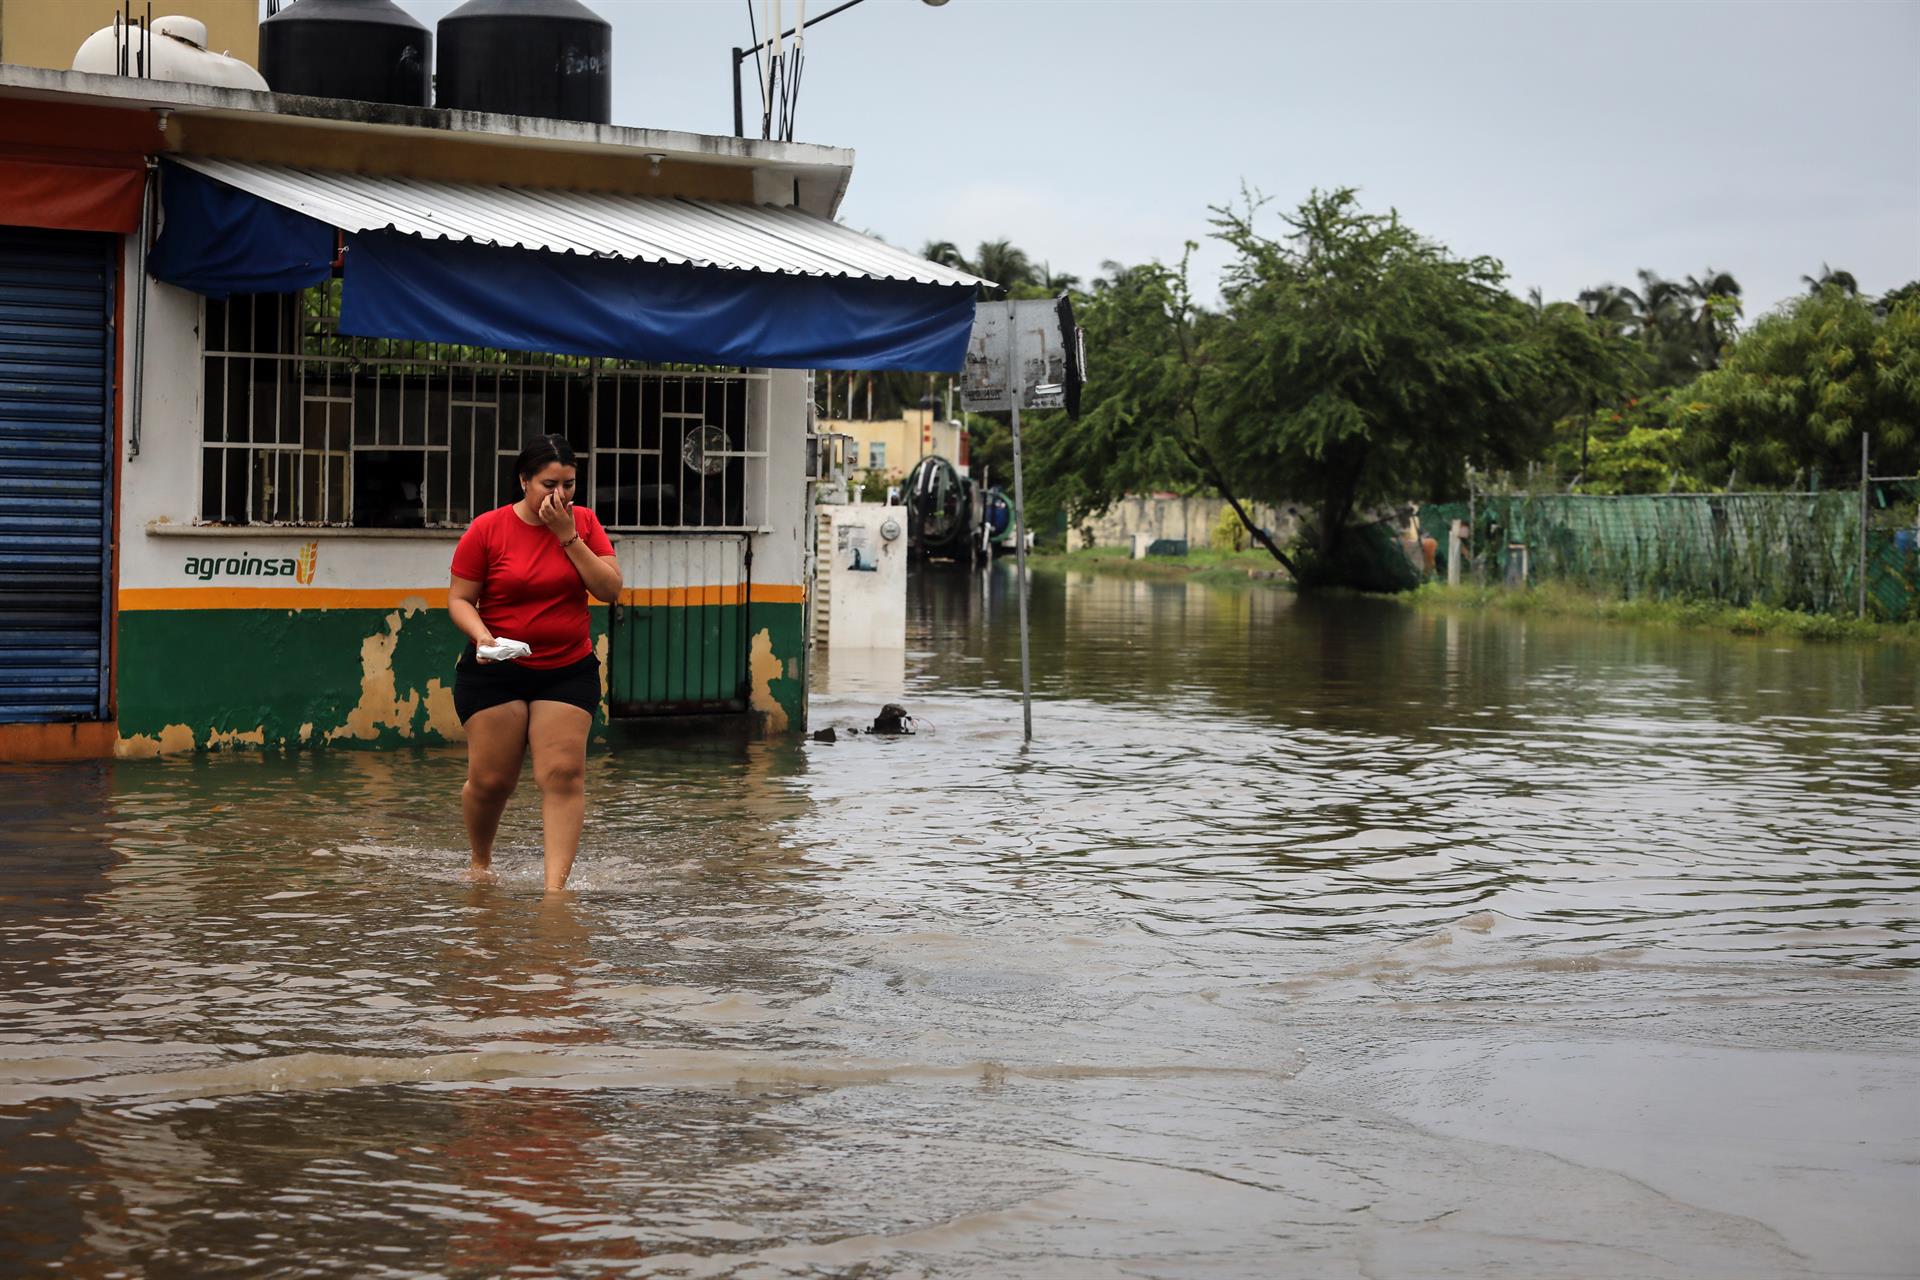 Una mujer camina por una calle inundada debido a las fuertes lluvias hoy, en Acapulco, estado de Guerrero (México). EFE/ David Guzmán
